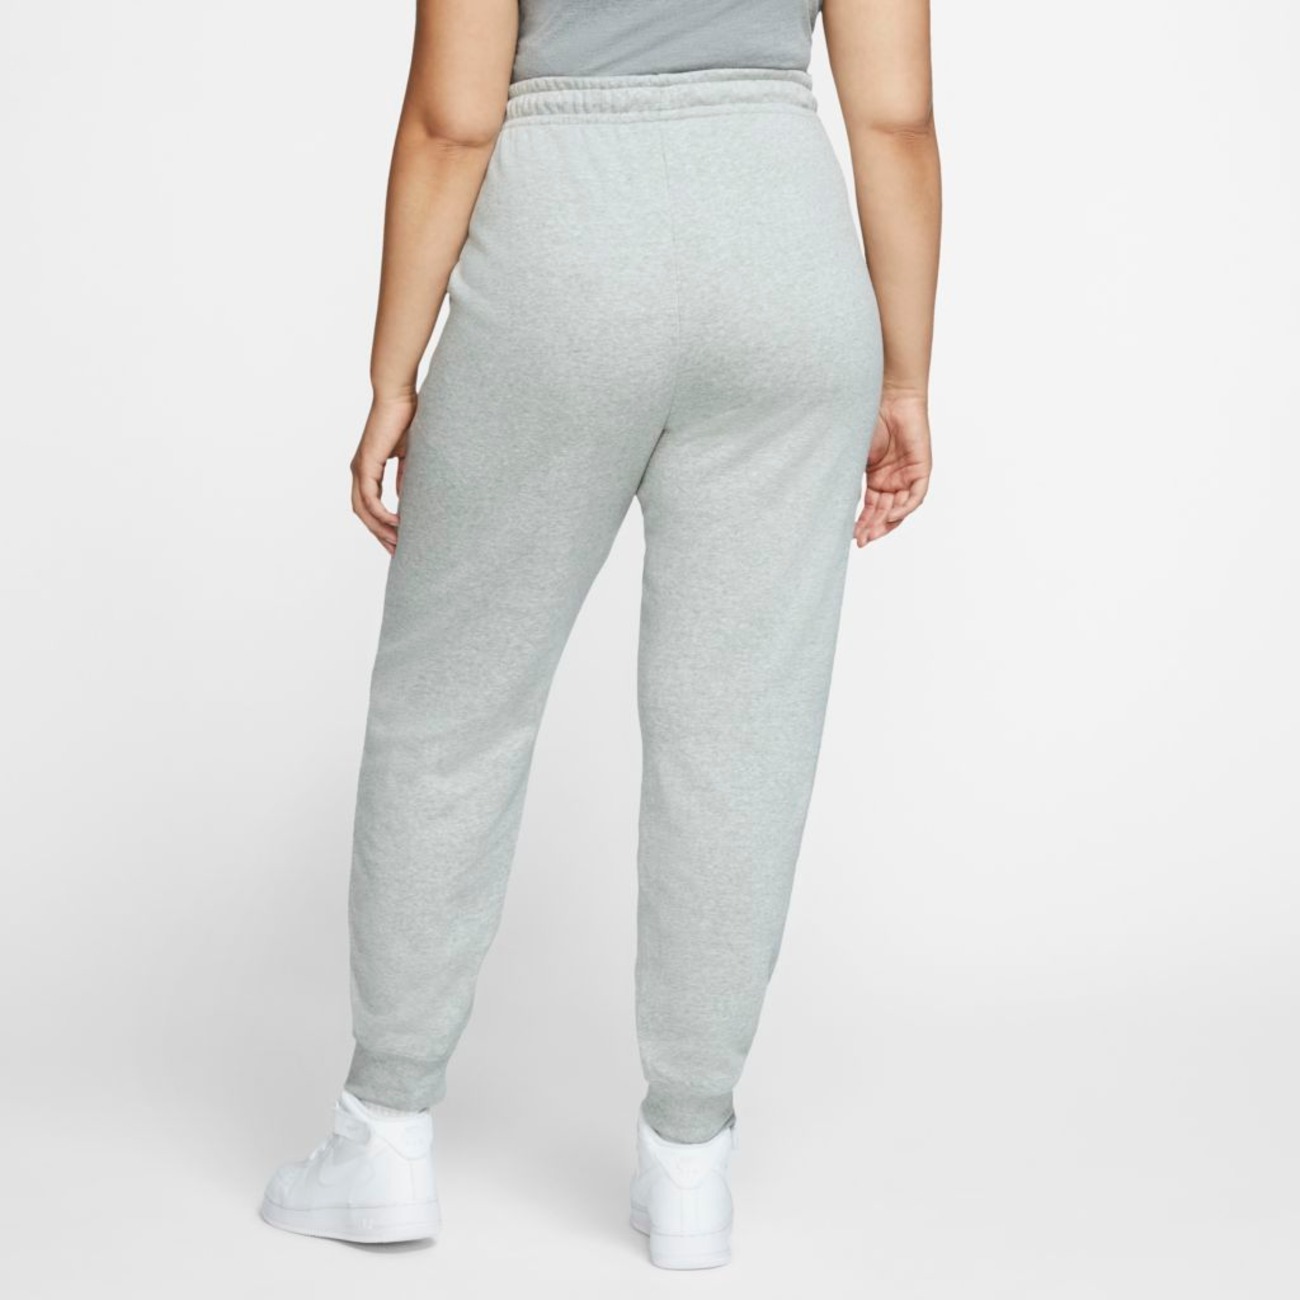 Plus Size - Calça Nike Sportswear Essential Feminina - Foto 2